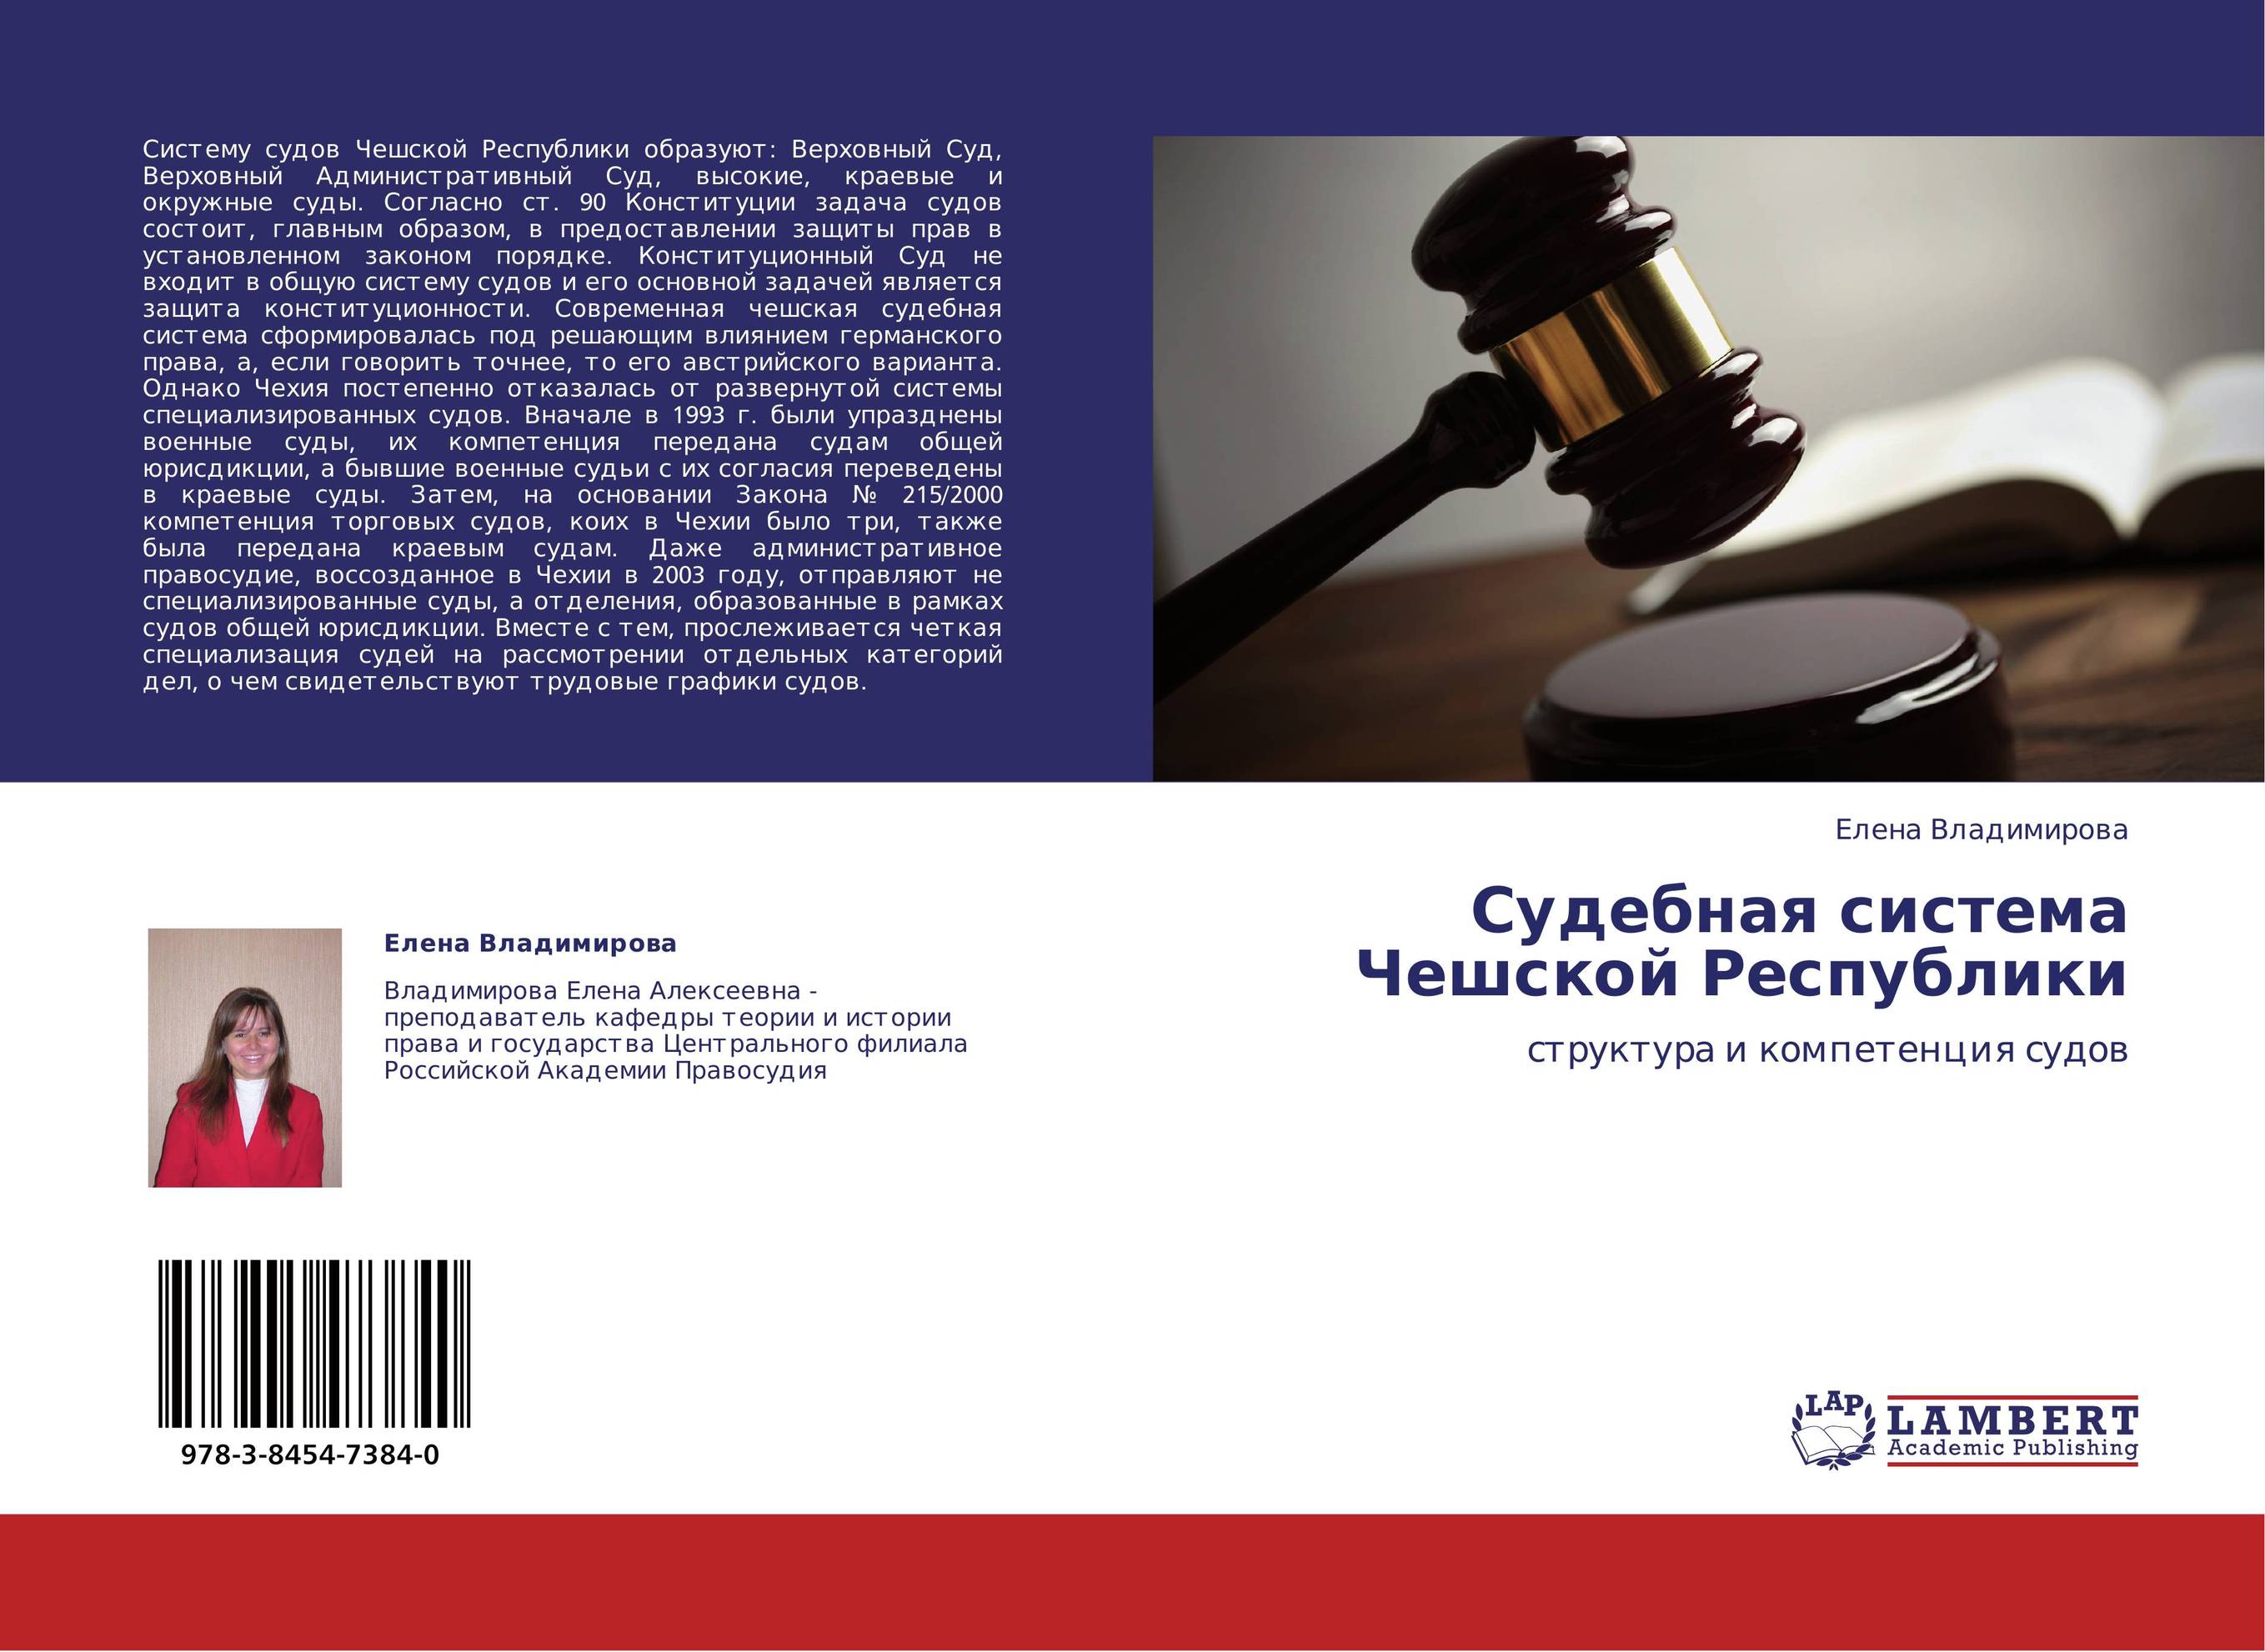 Судебная система Чешской Республики. Структура и компетенция судов.